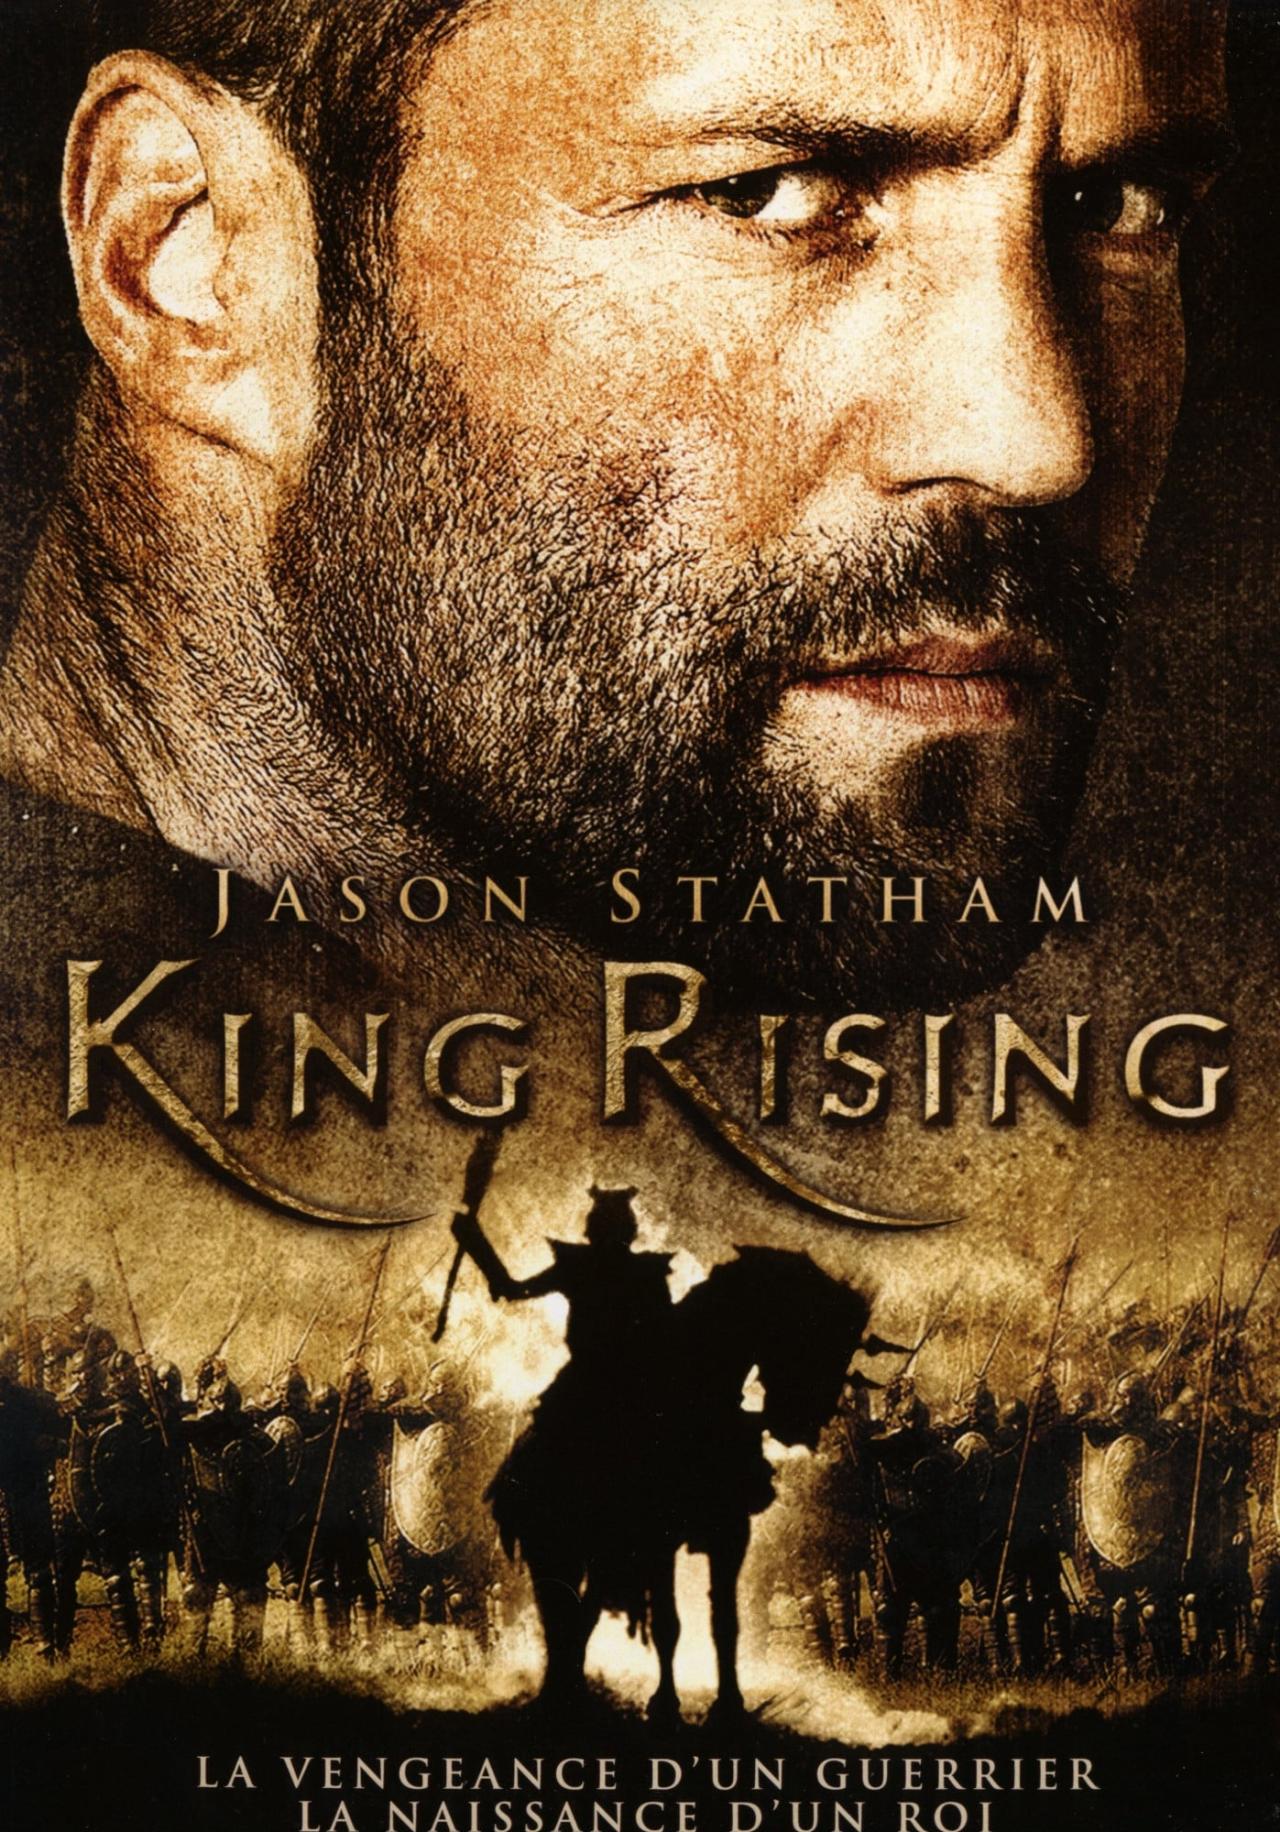 King Rising, au nom du roi est-il disponible sur Netflix ou autre ?